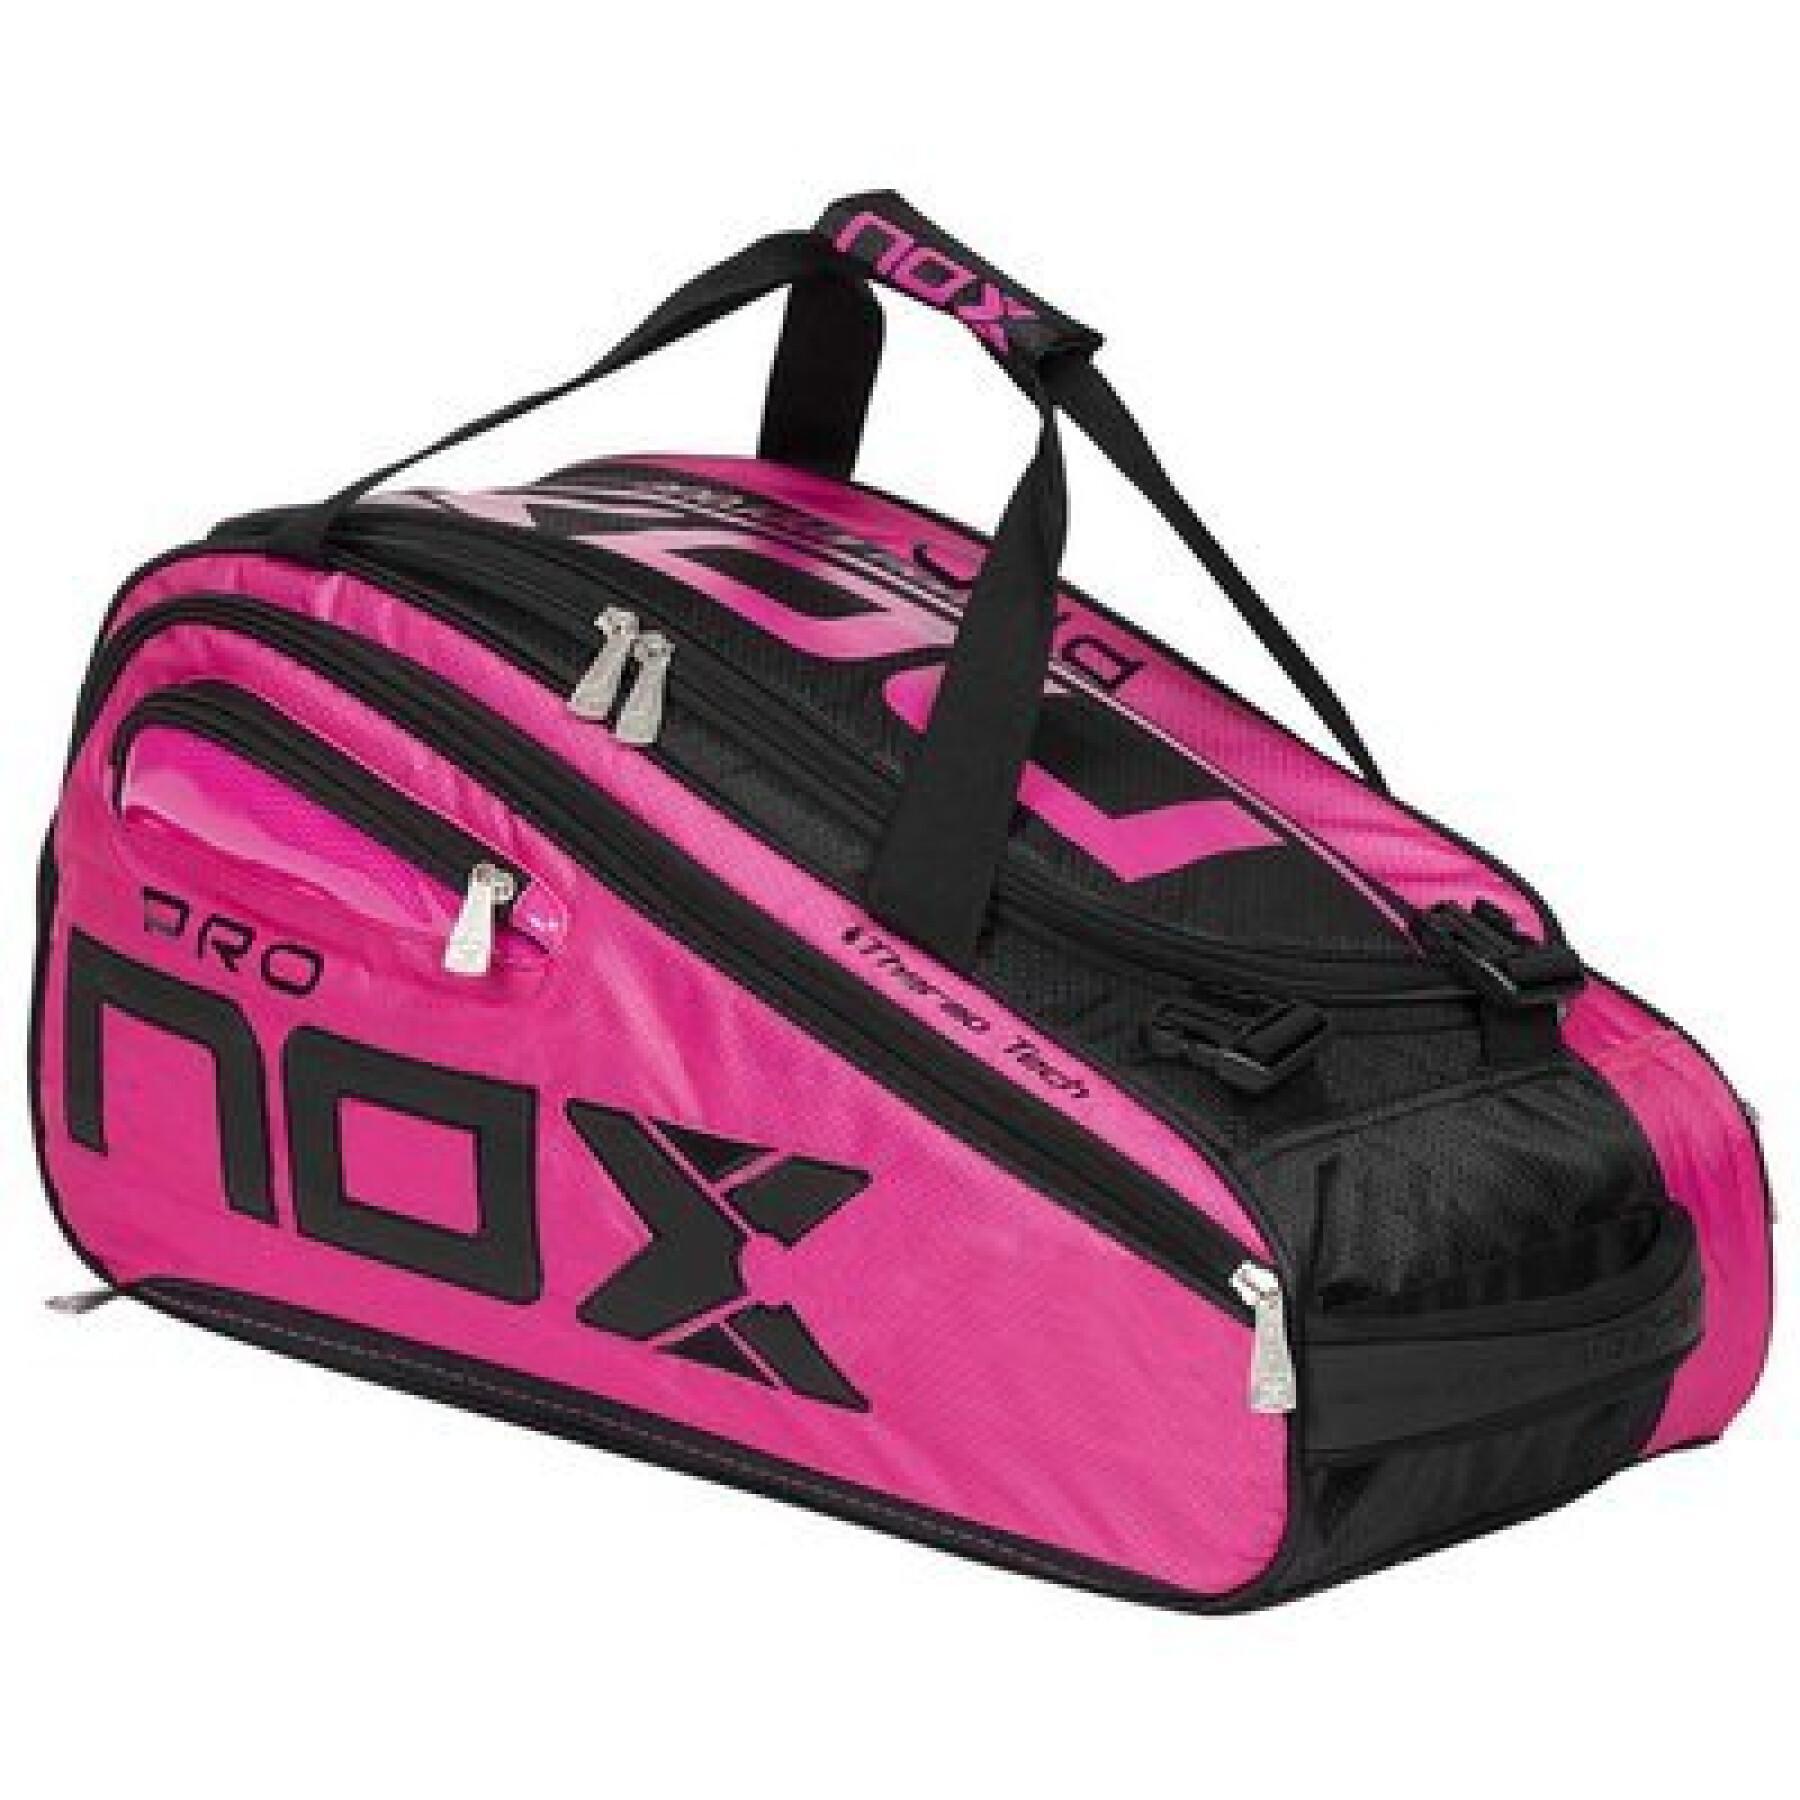 Racket bag from padel Nox Team